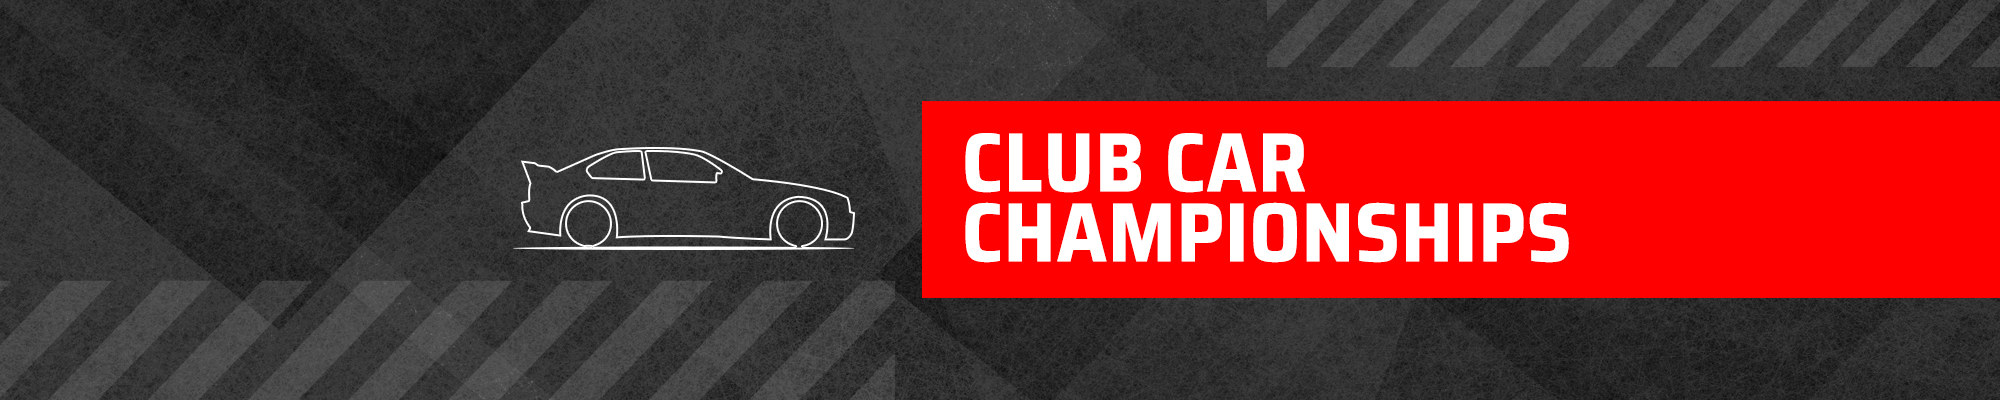 2CV 24hr Race and BARC Club Car Championships